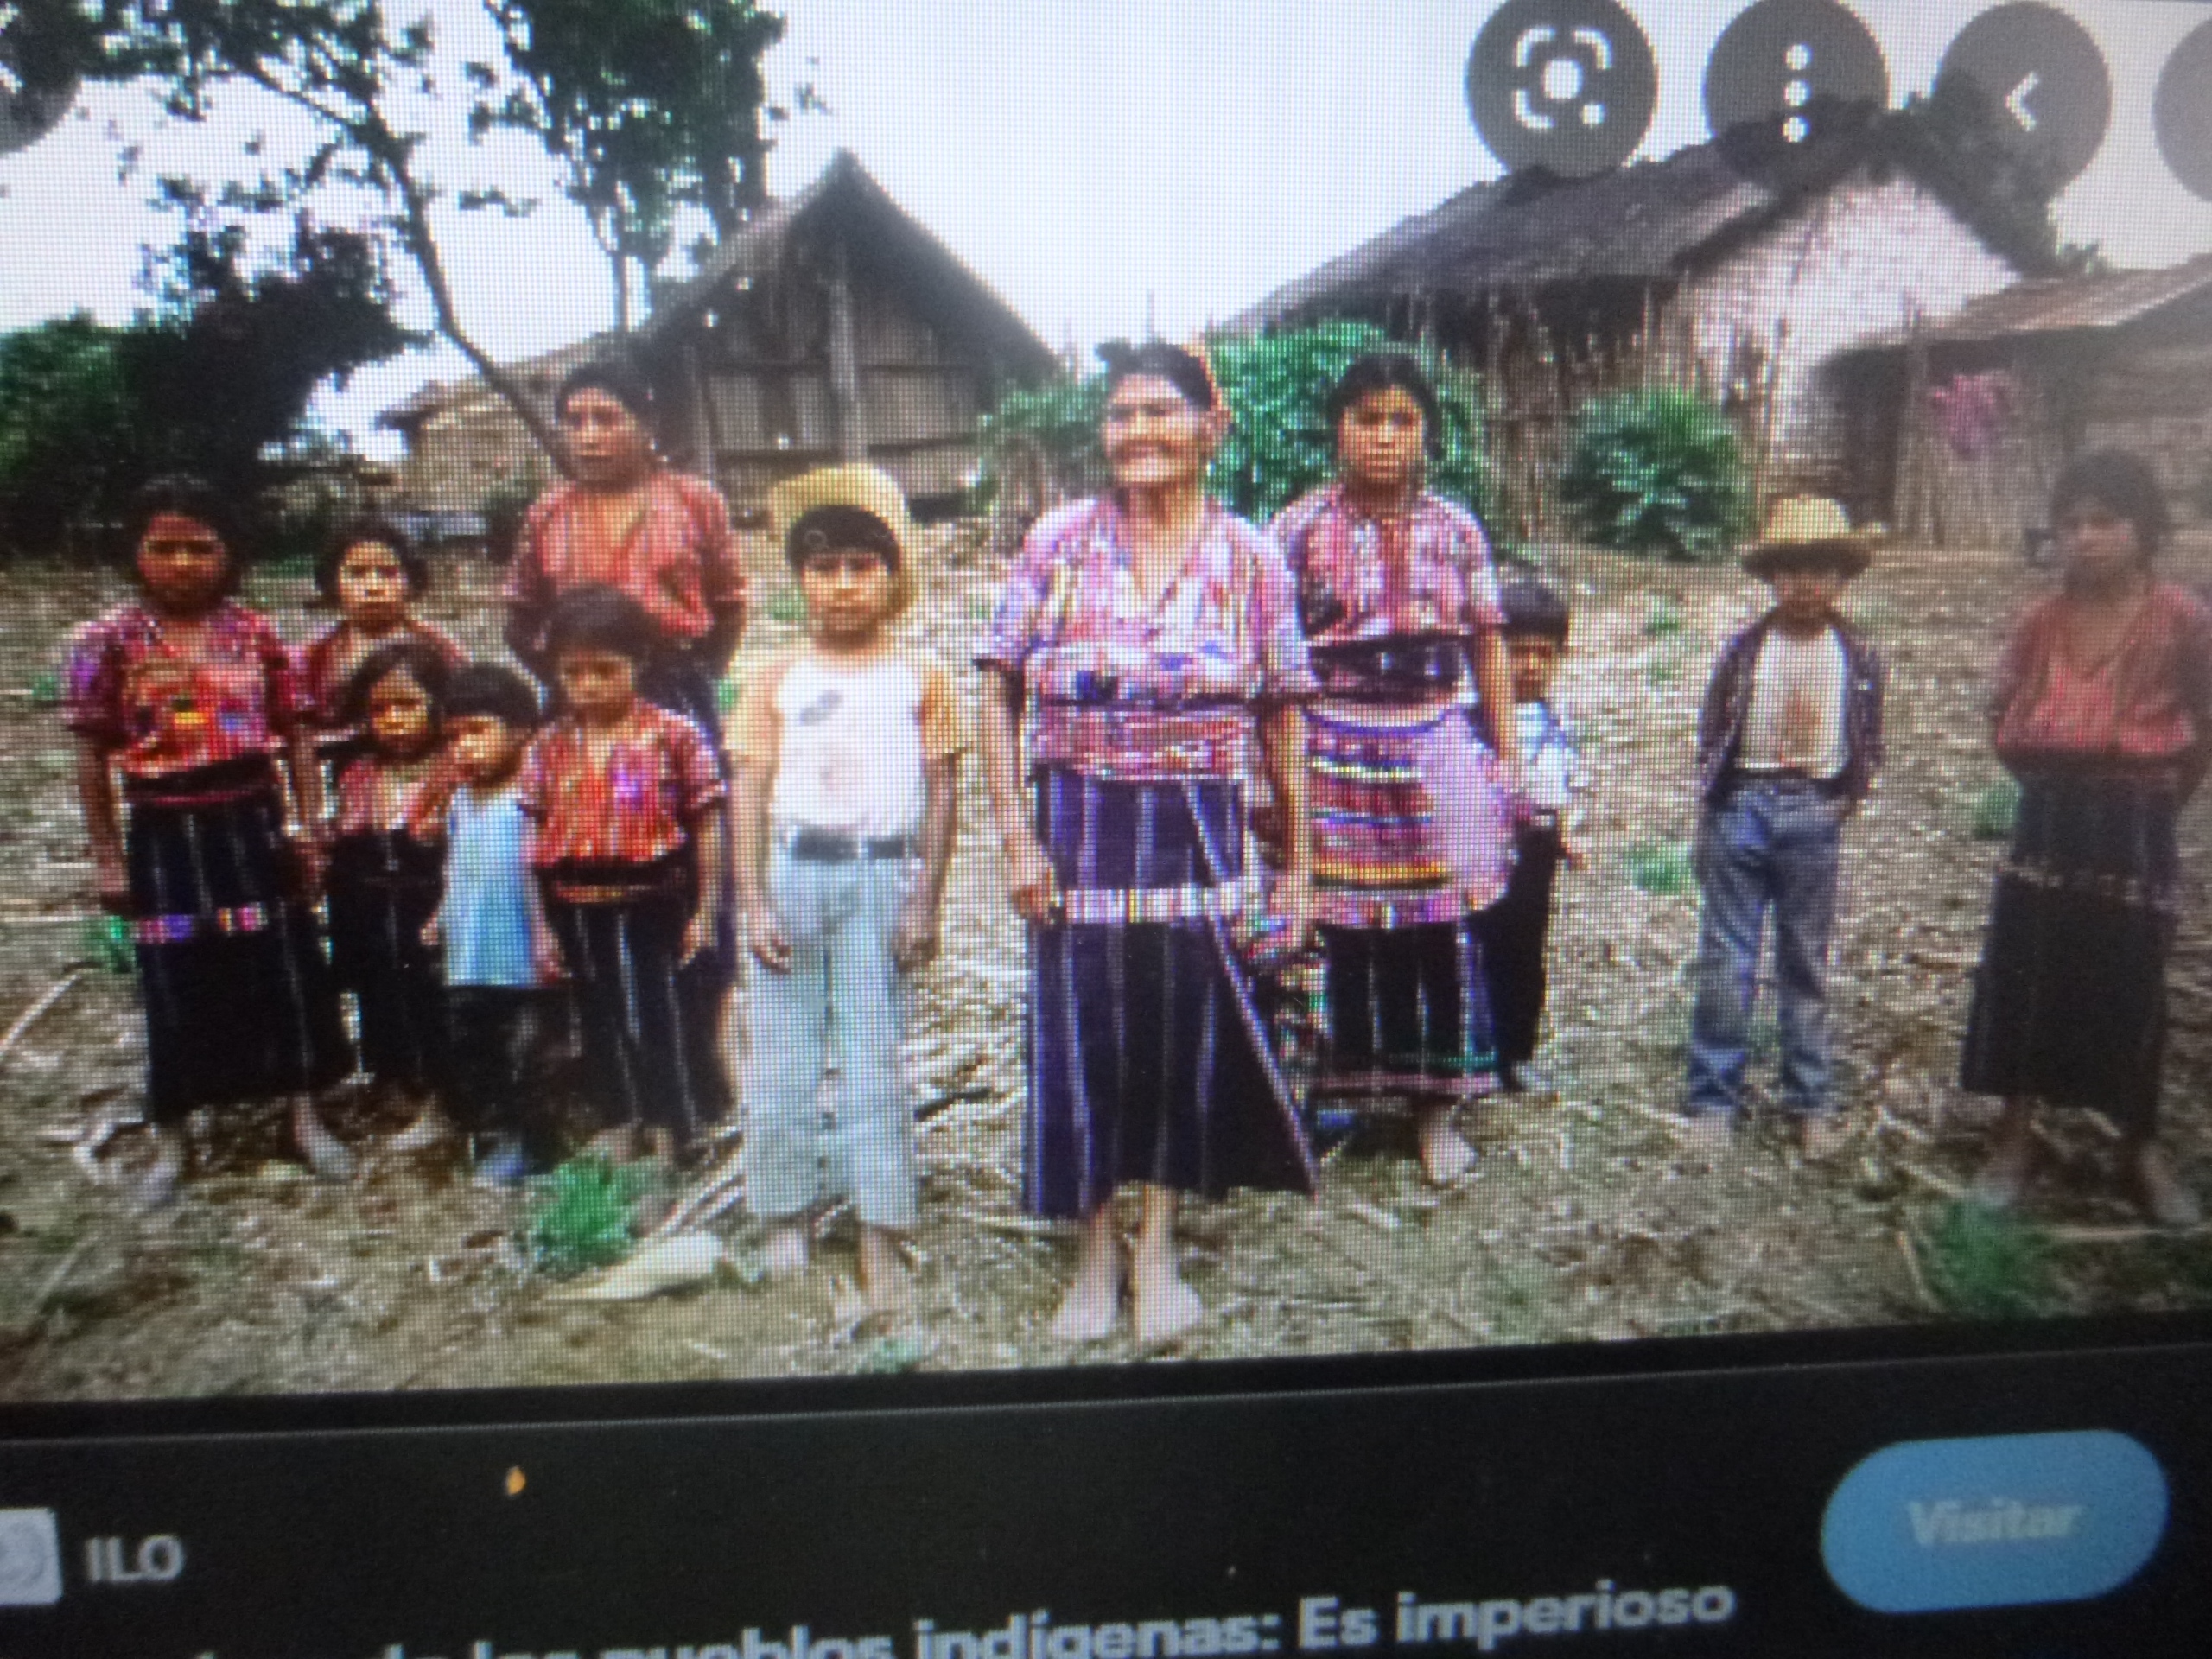 En México 12 millones de indígenas están al margen del desarrollo, afirma investigador